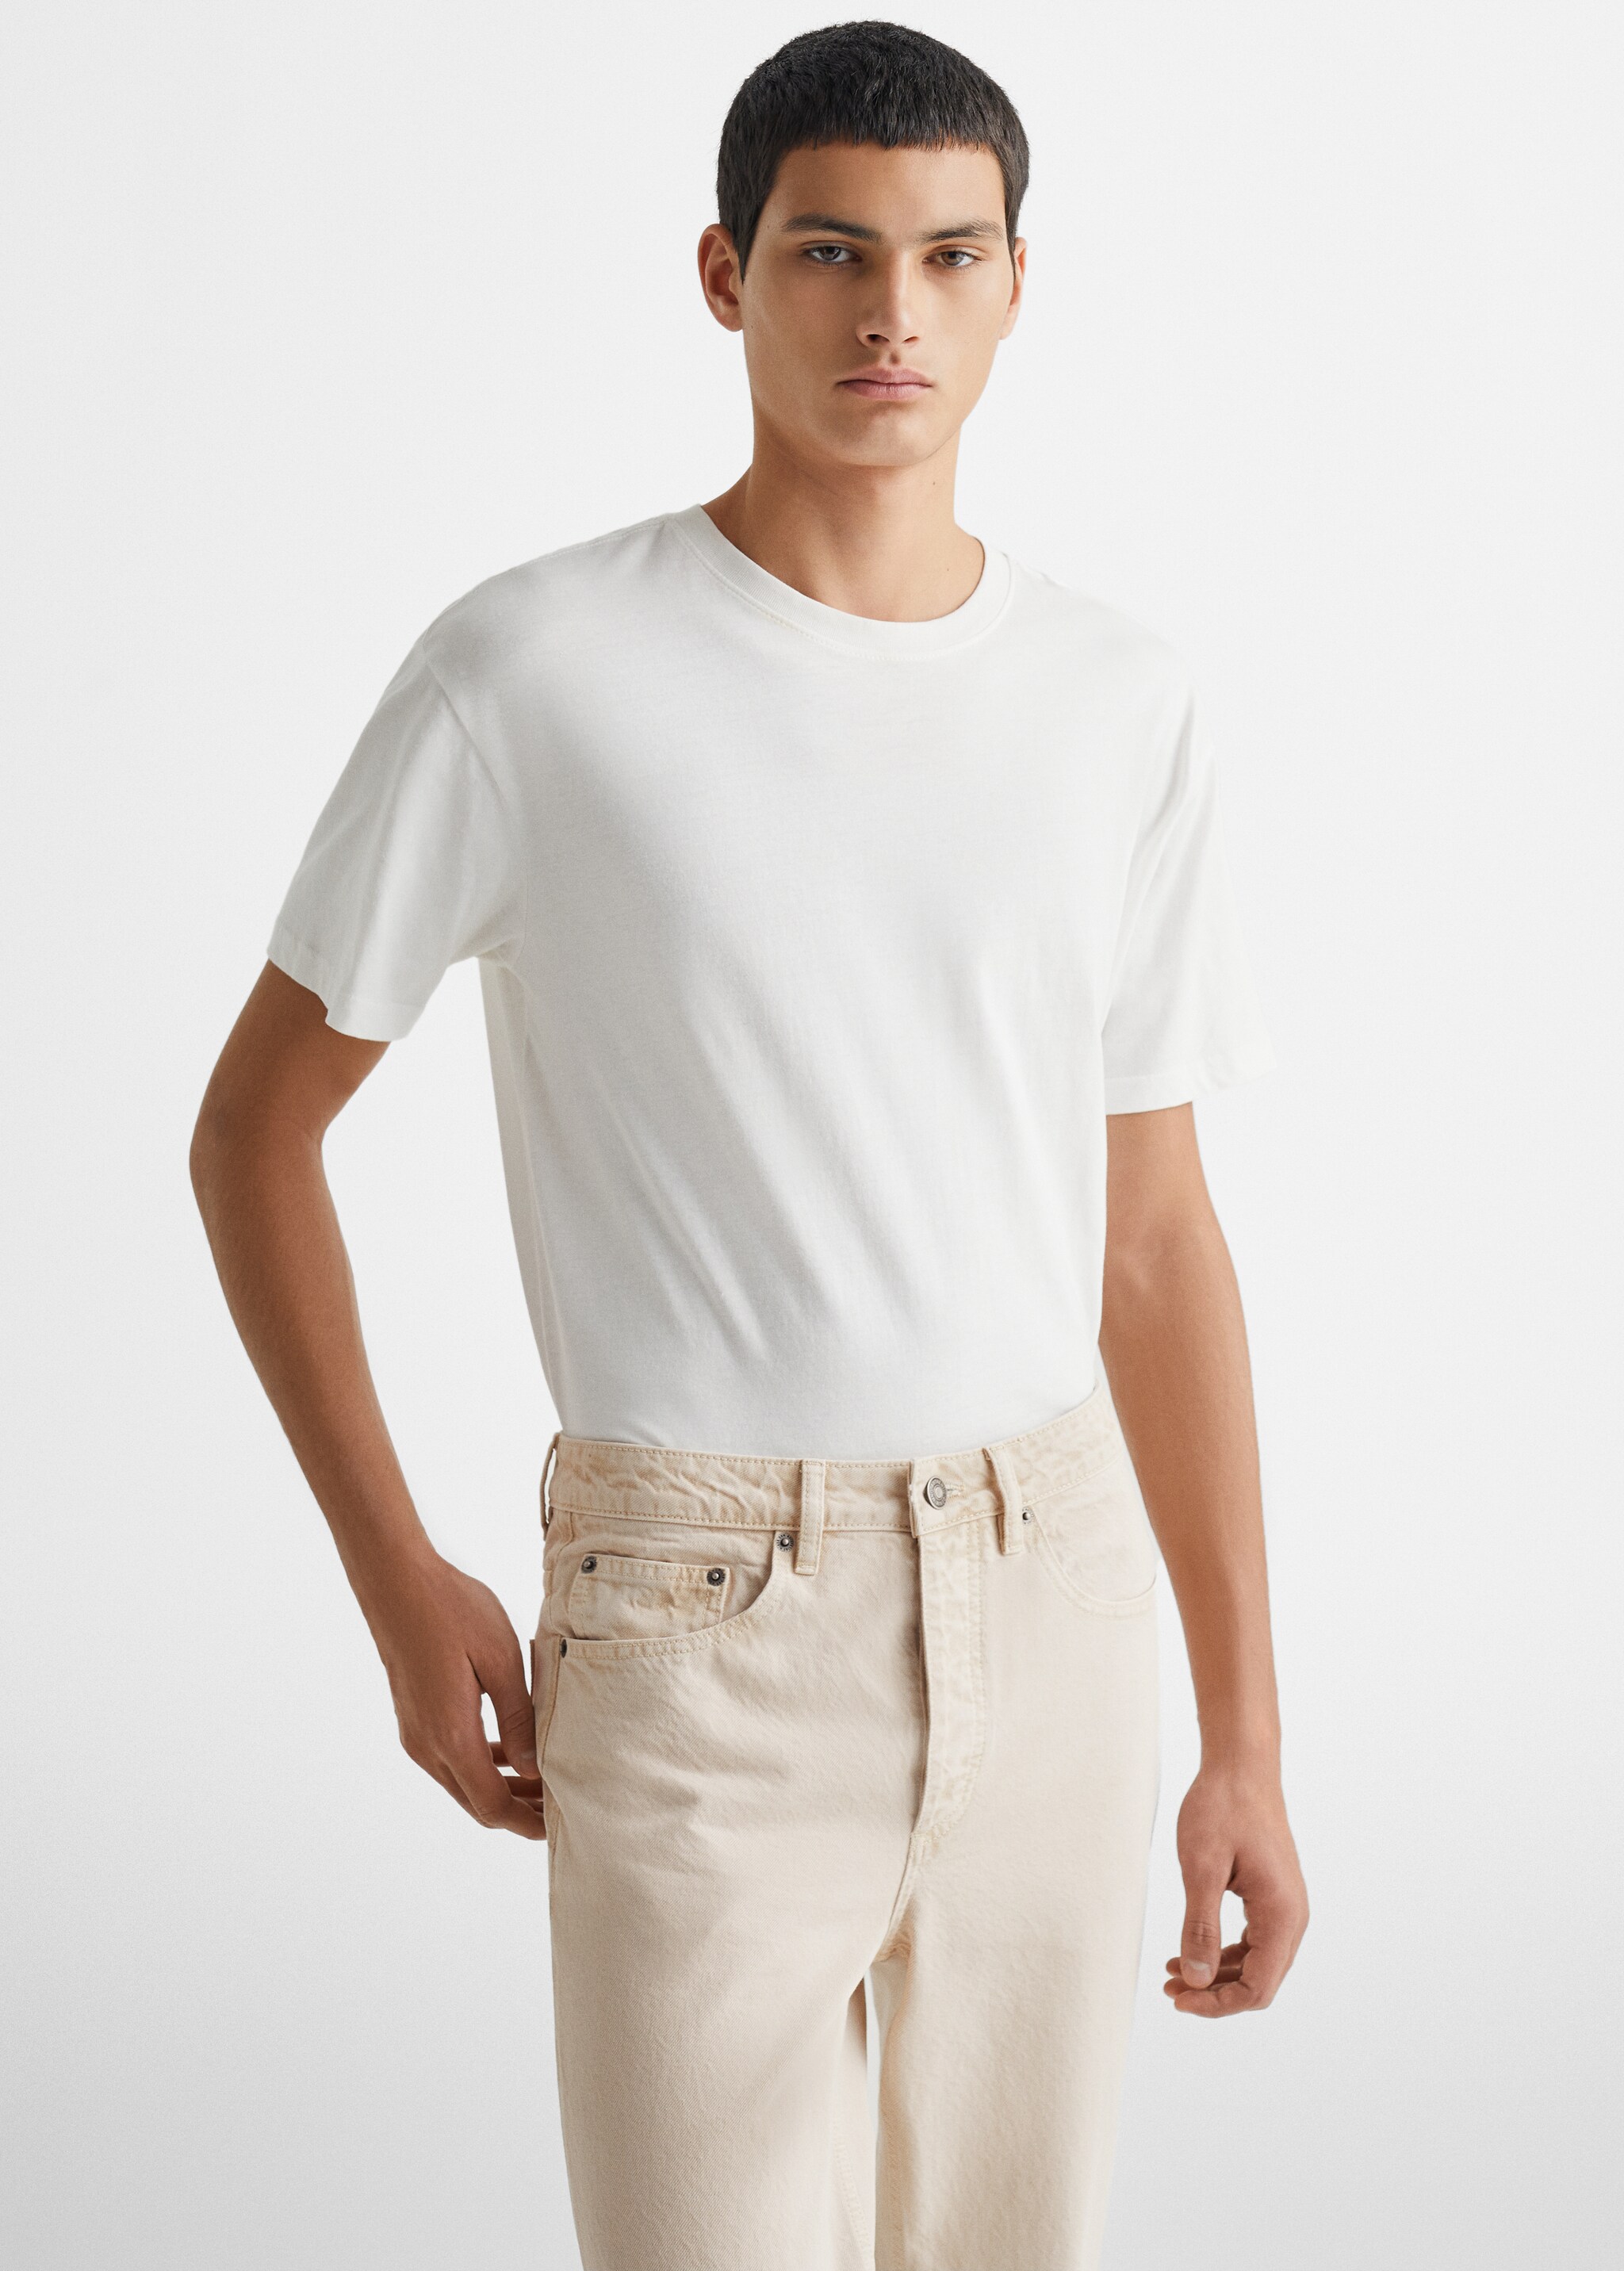 Pantalón regular fit algodón - Plano medio